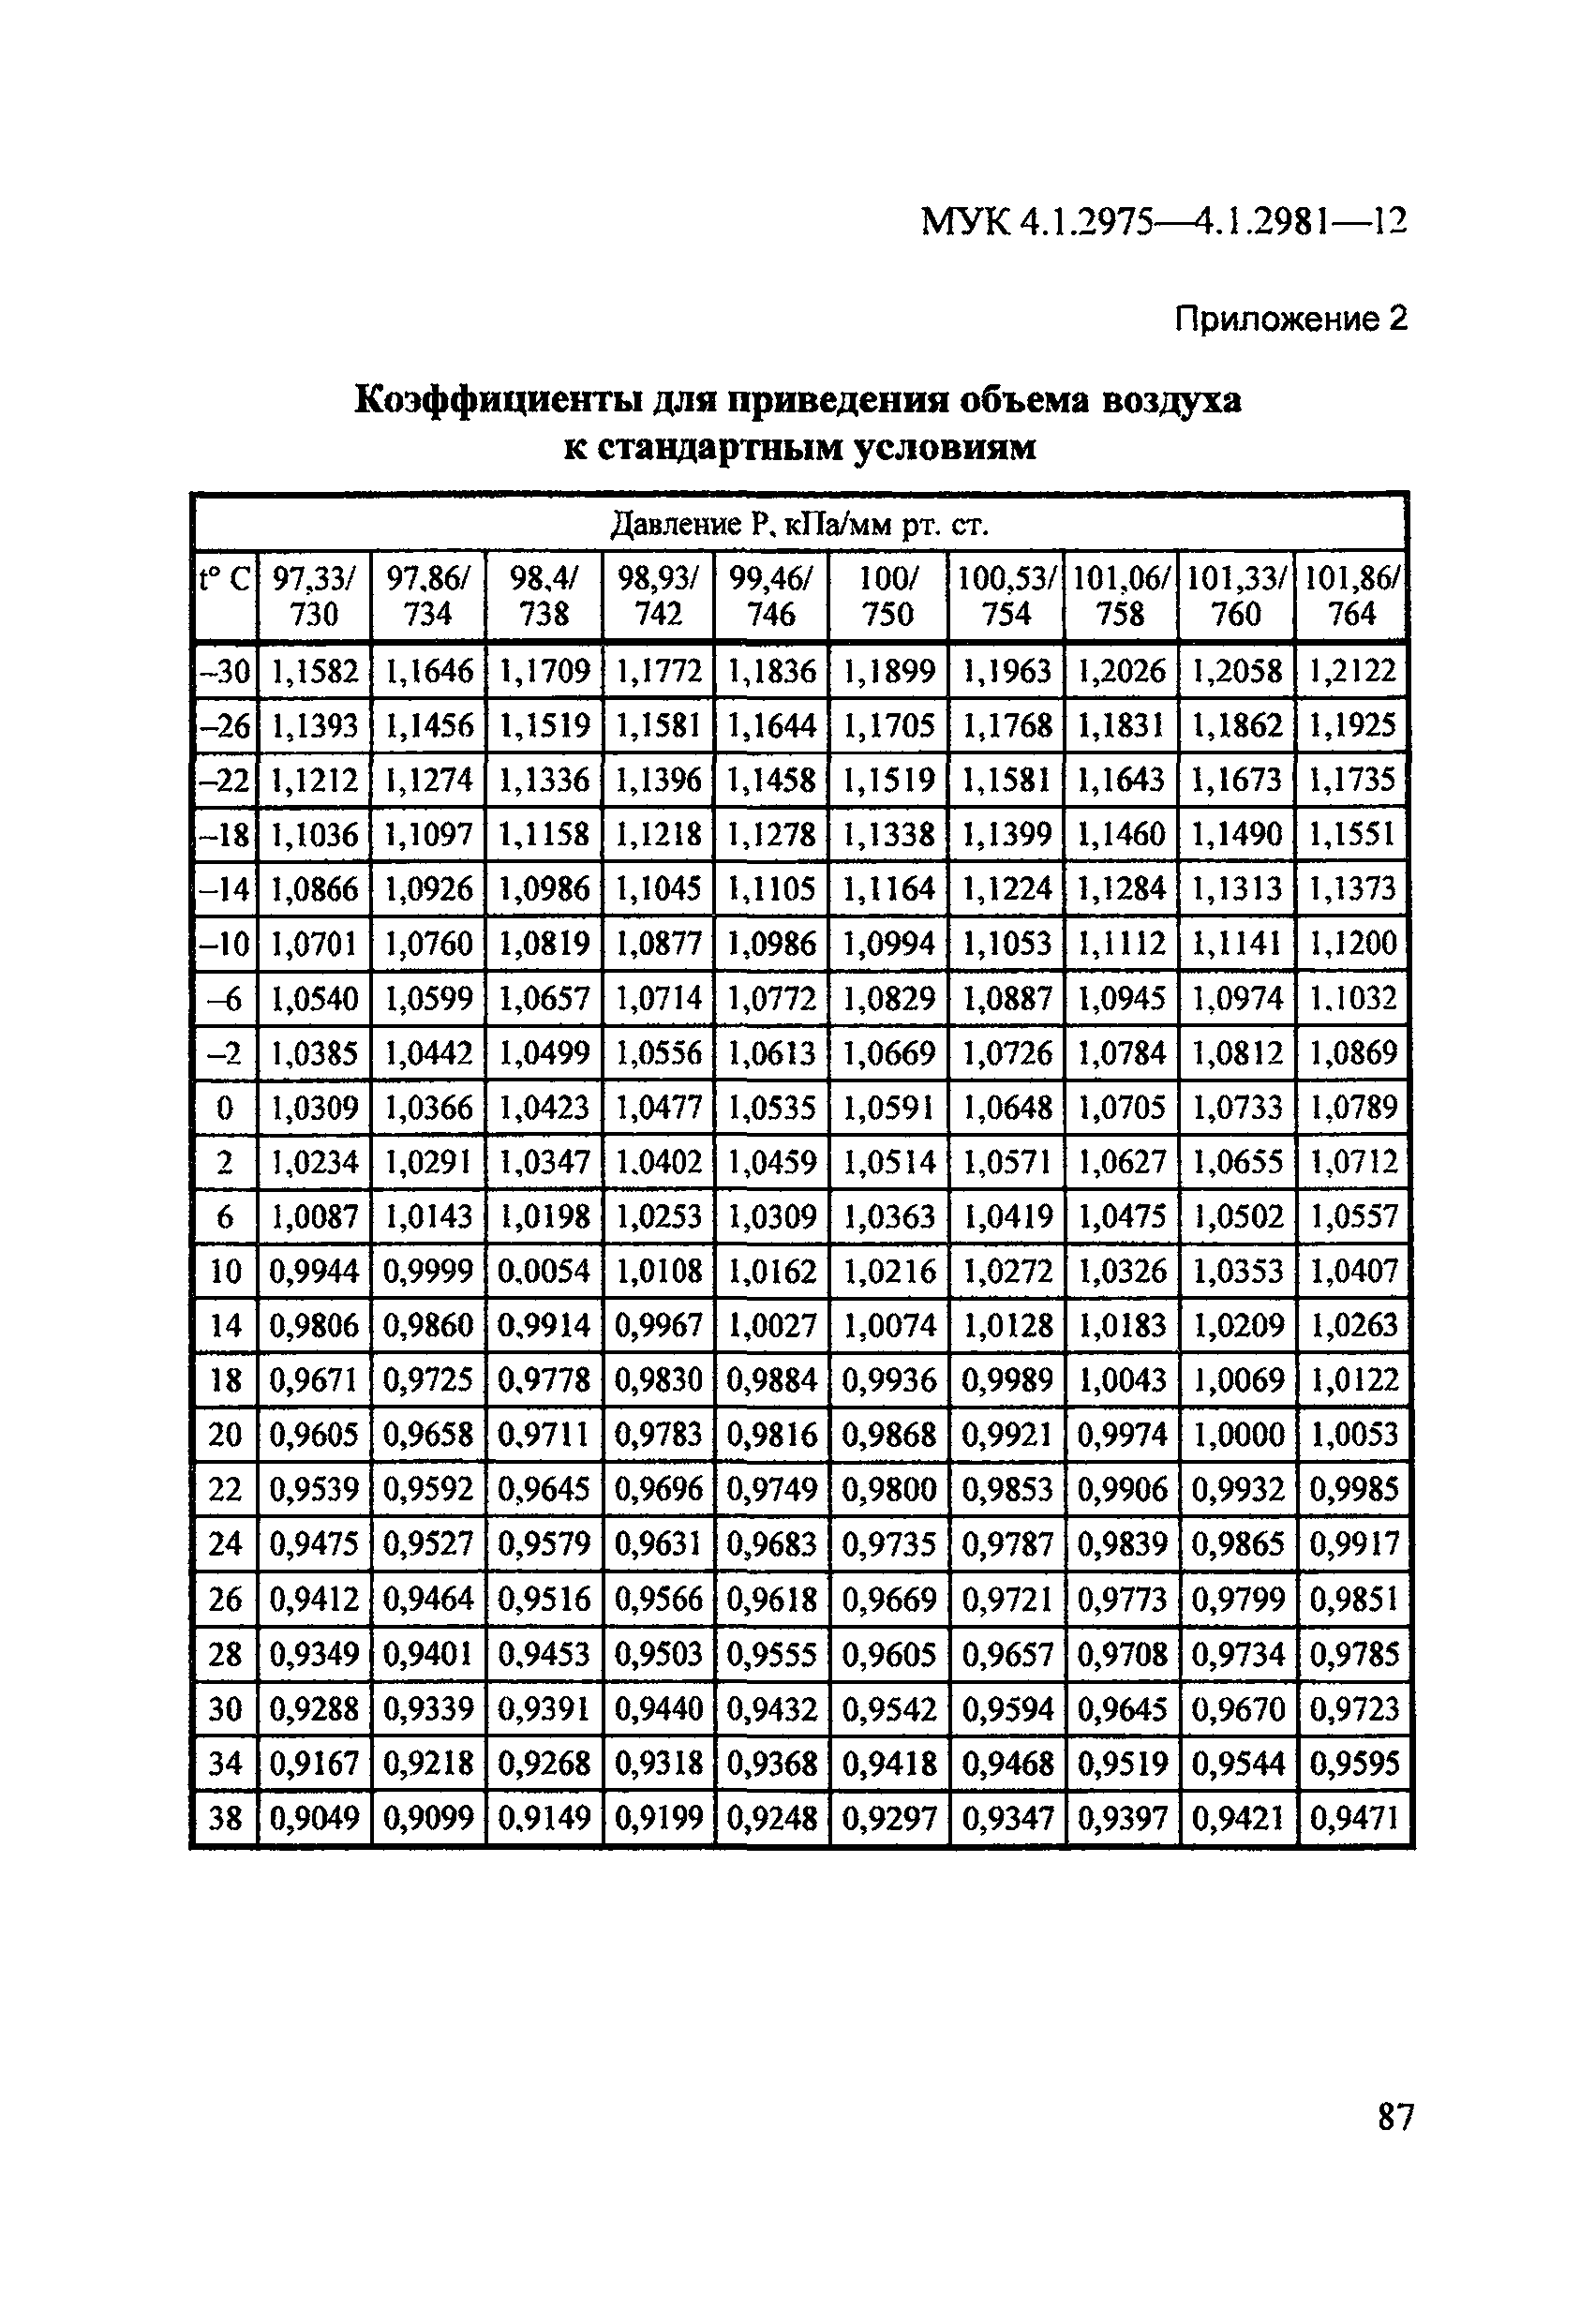 МУК 4.1.2975-12